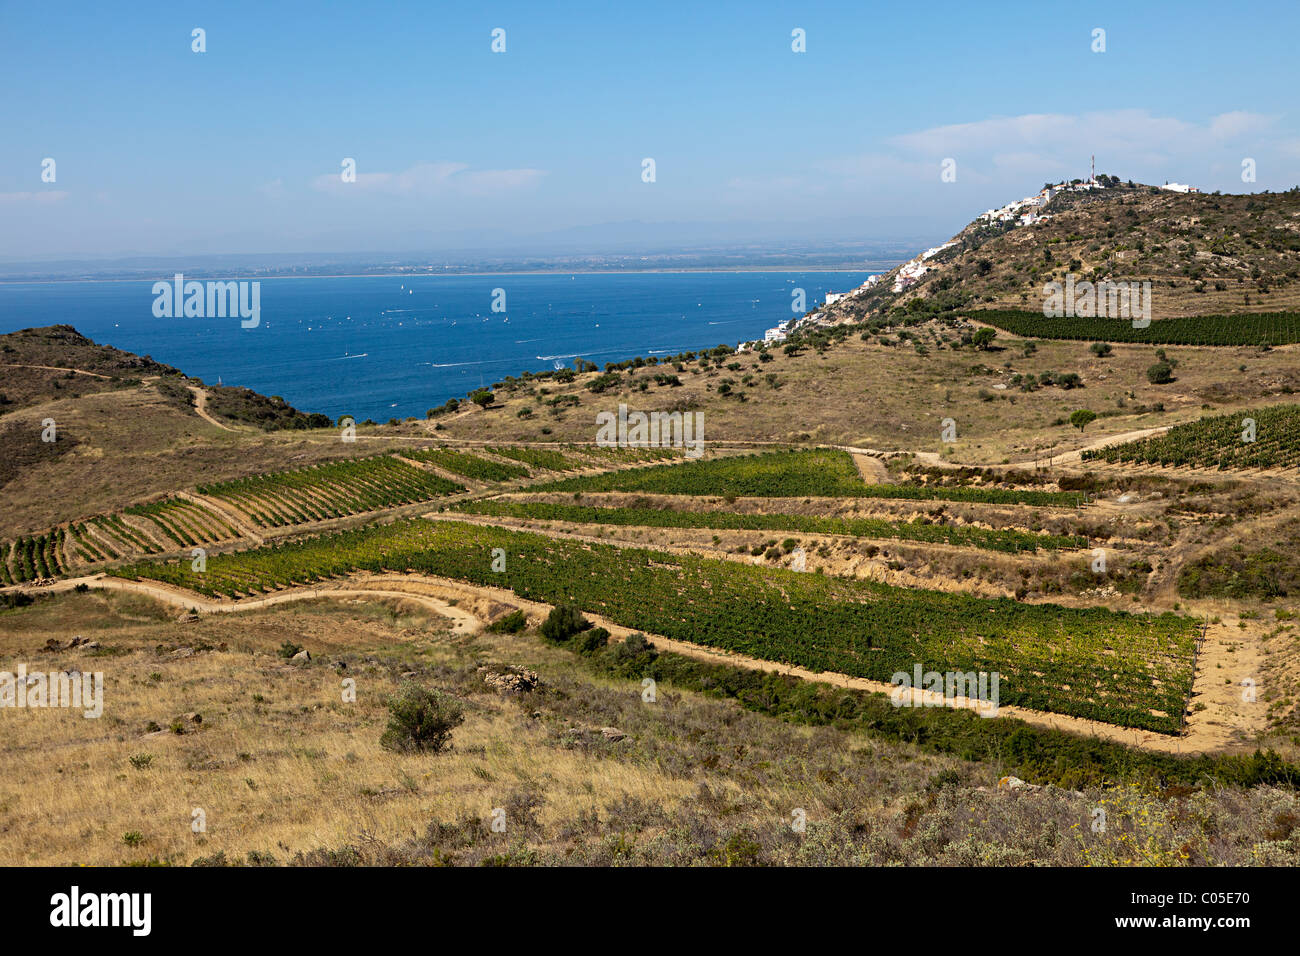 L'agriculture sur l'Almadrava champs près de Golf de la baie de Roses Emporda Catalogne Espagne Méditerranéenne Banque D'Images